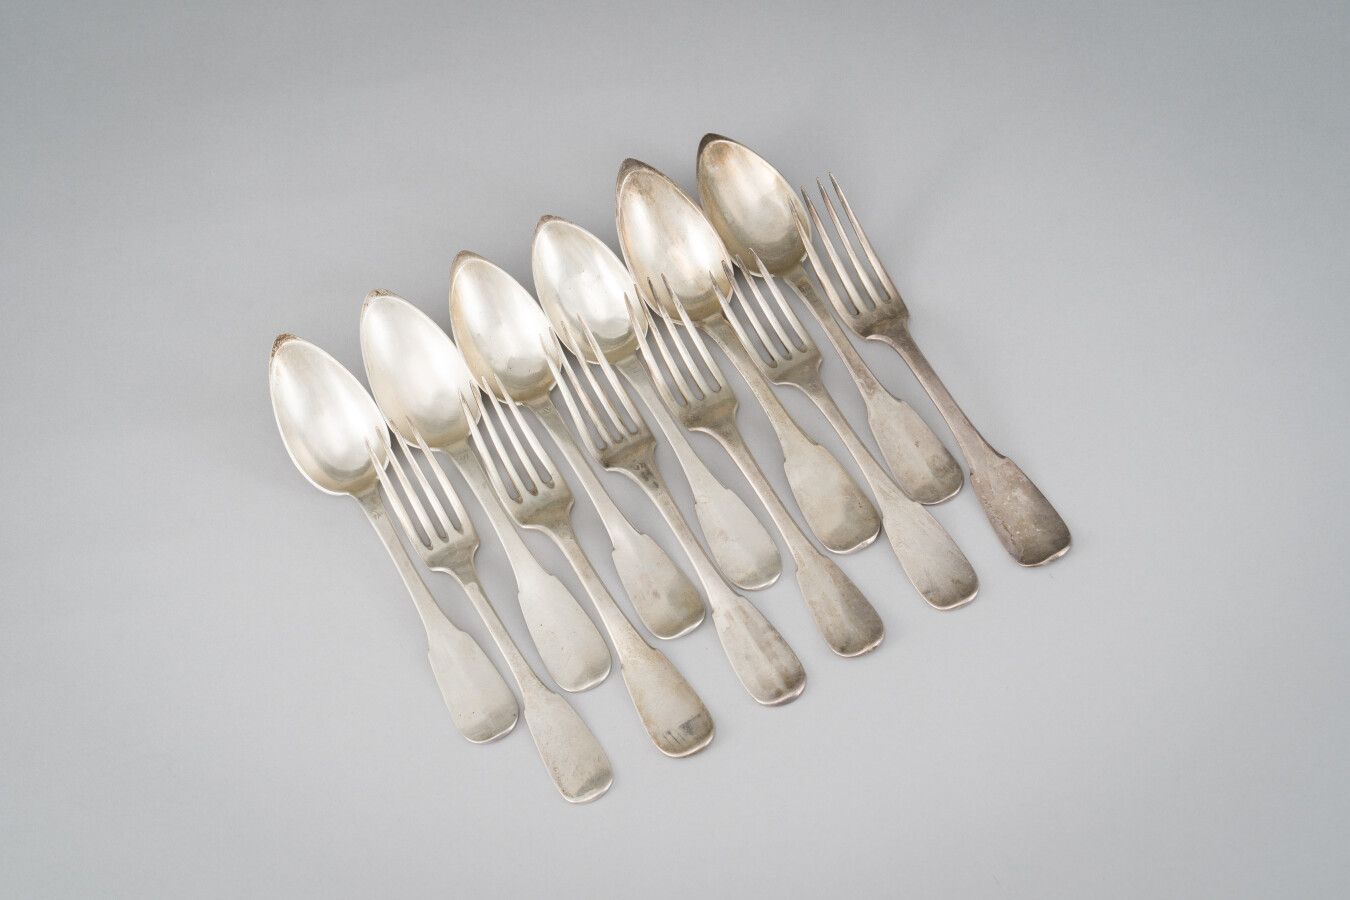 Null 一套六件银质餐具（第950/1000件）单板模型。

(磨损和不同的金匠)

重量：919克